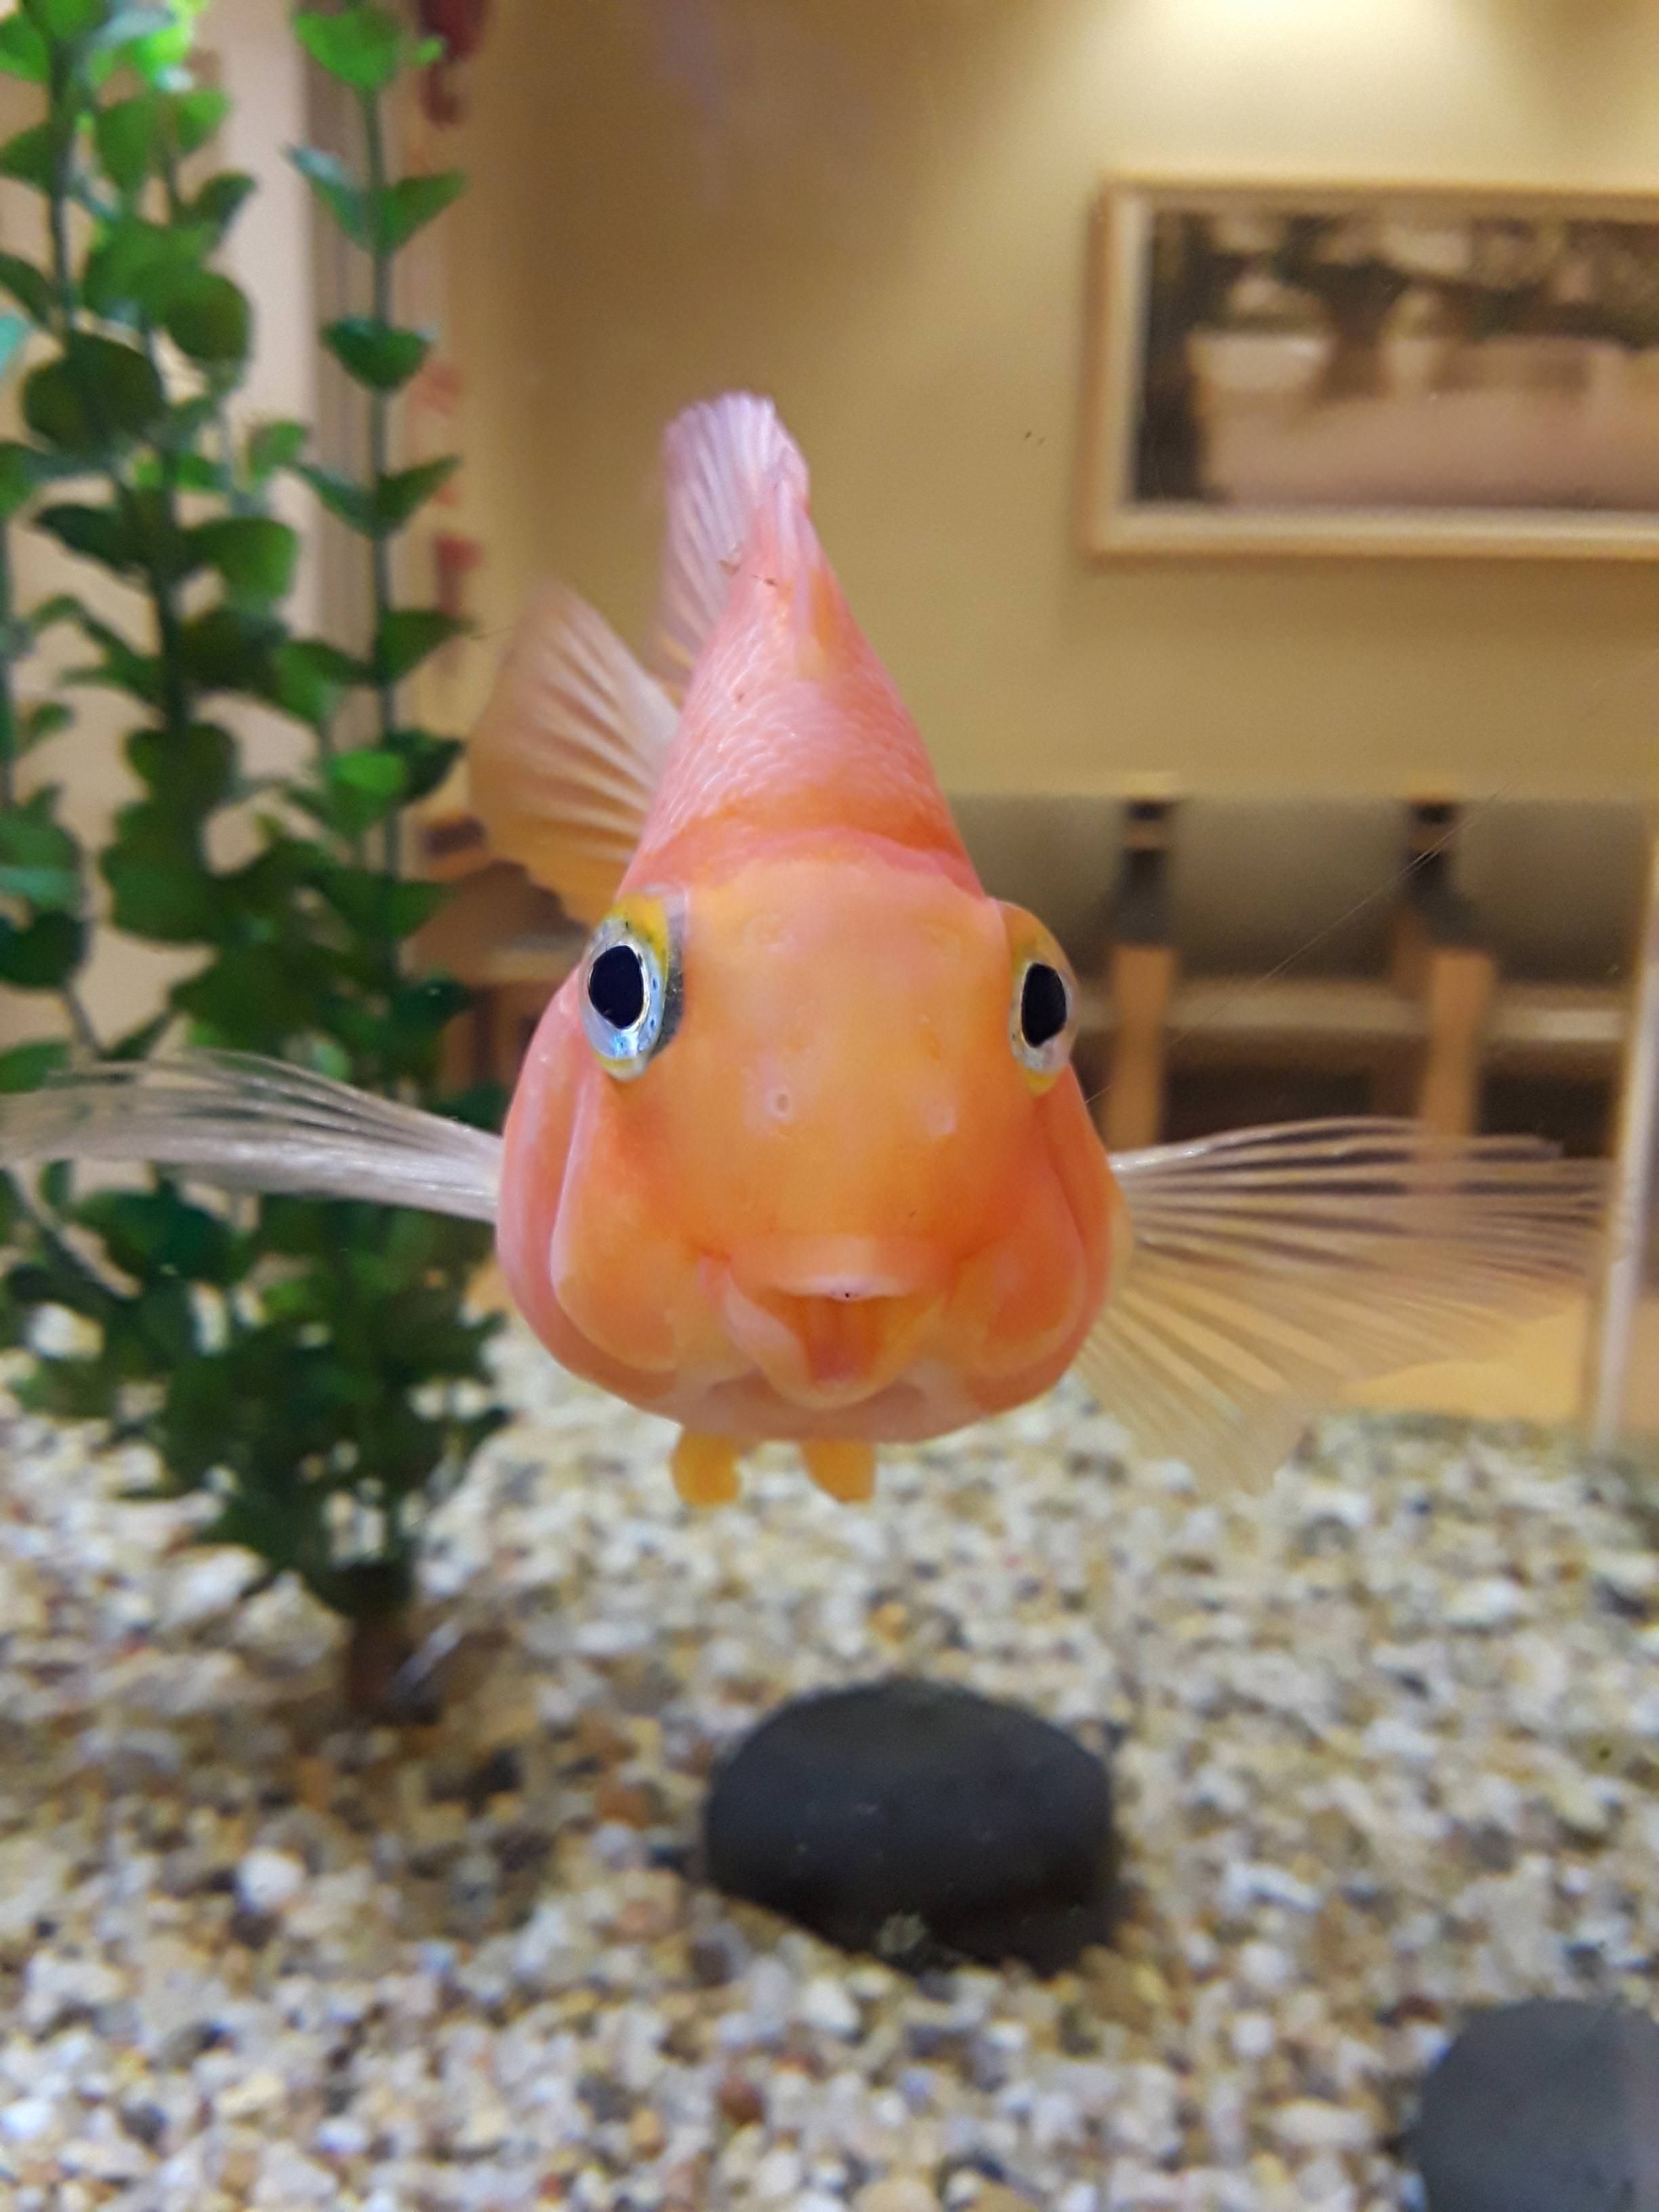 Just met the happiest little fish!